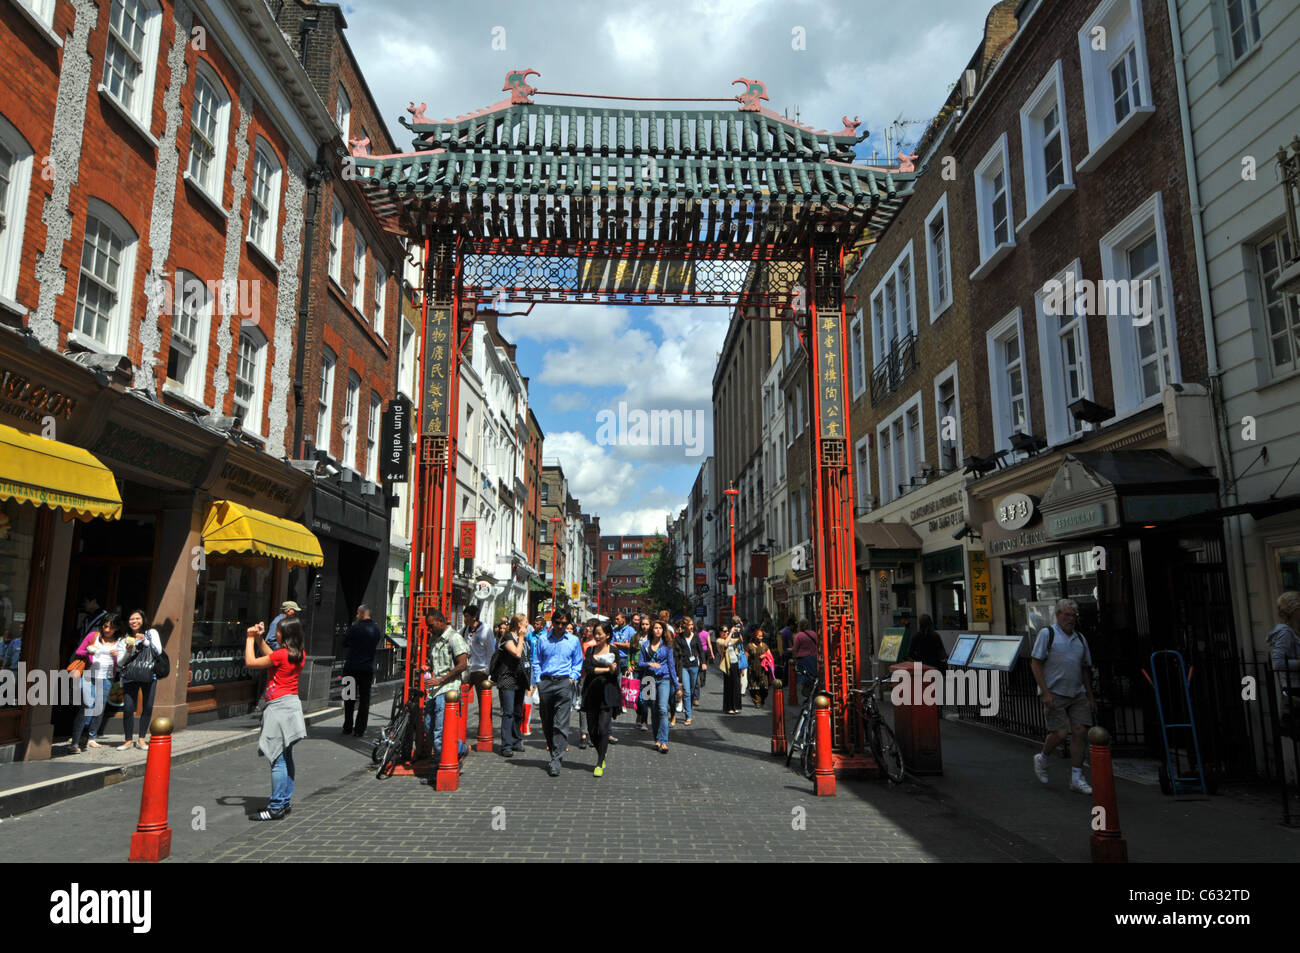 Chinatown, London, Chinatown, Gerrard Street, London, Britain, UK Stock Photo